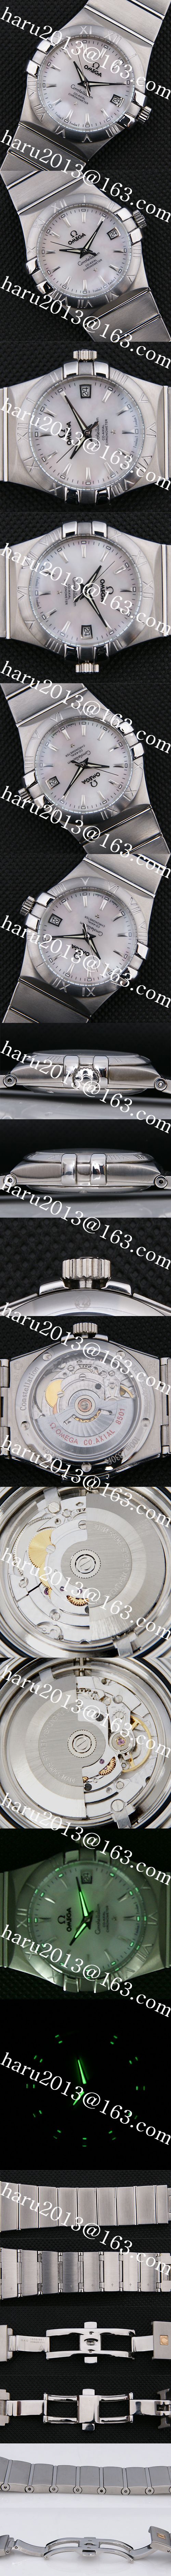 【35mm、140g】オメガ コンステレーション 海外ブランド時計